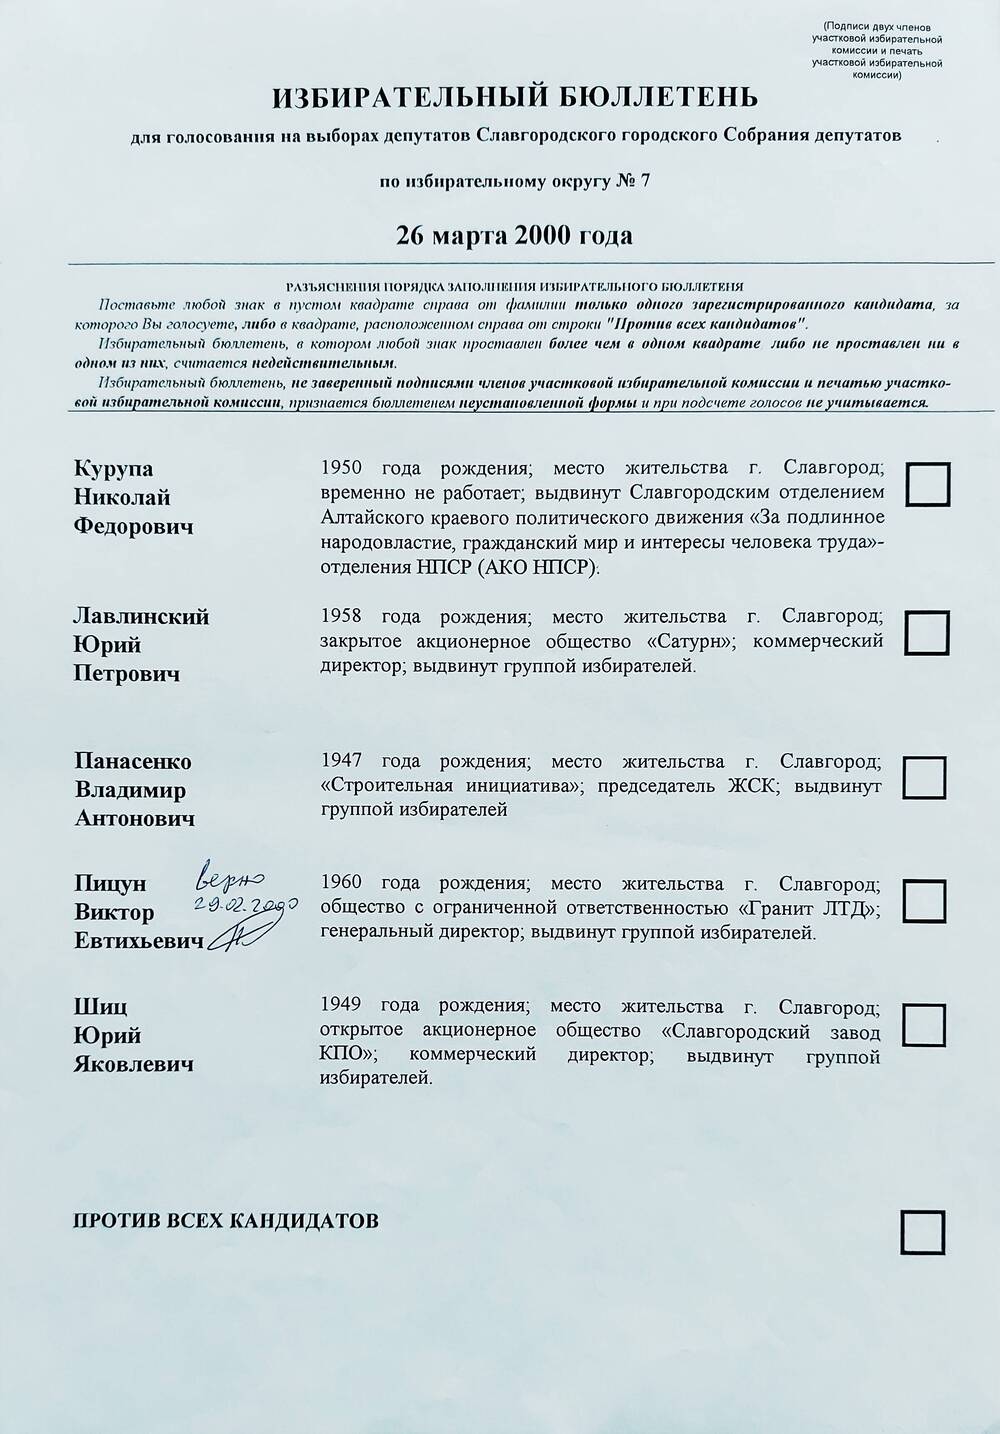 Бюллетень избирательный для голосования на выборах депутатов Славгородского городского Собрания депутатов по избирательному округу № 7 от 26 марта 2000 года.